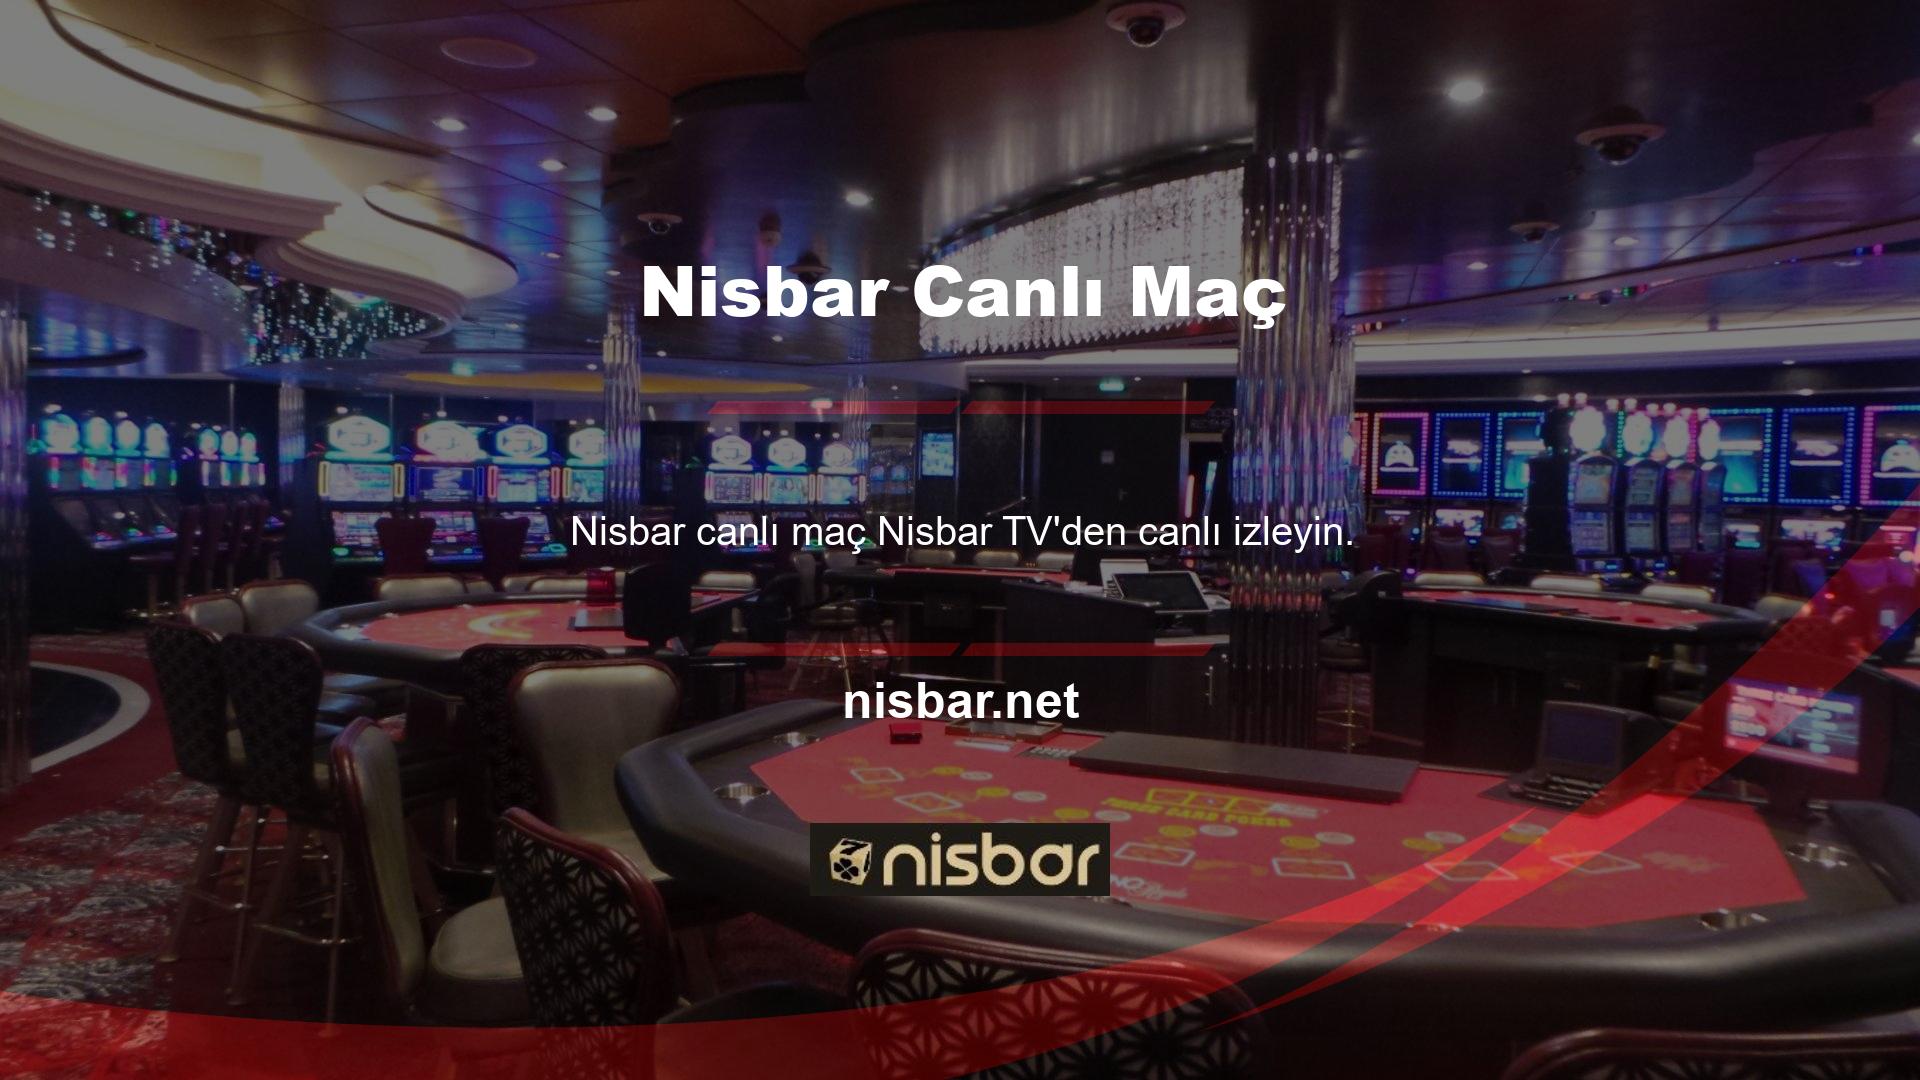 Nisbar TV işlevi etkin kalır